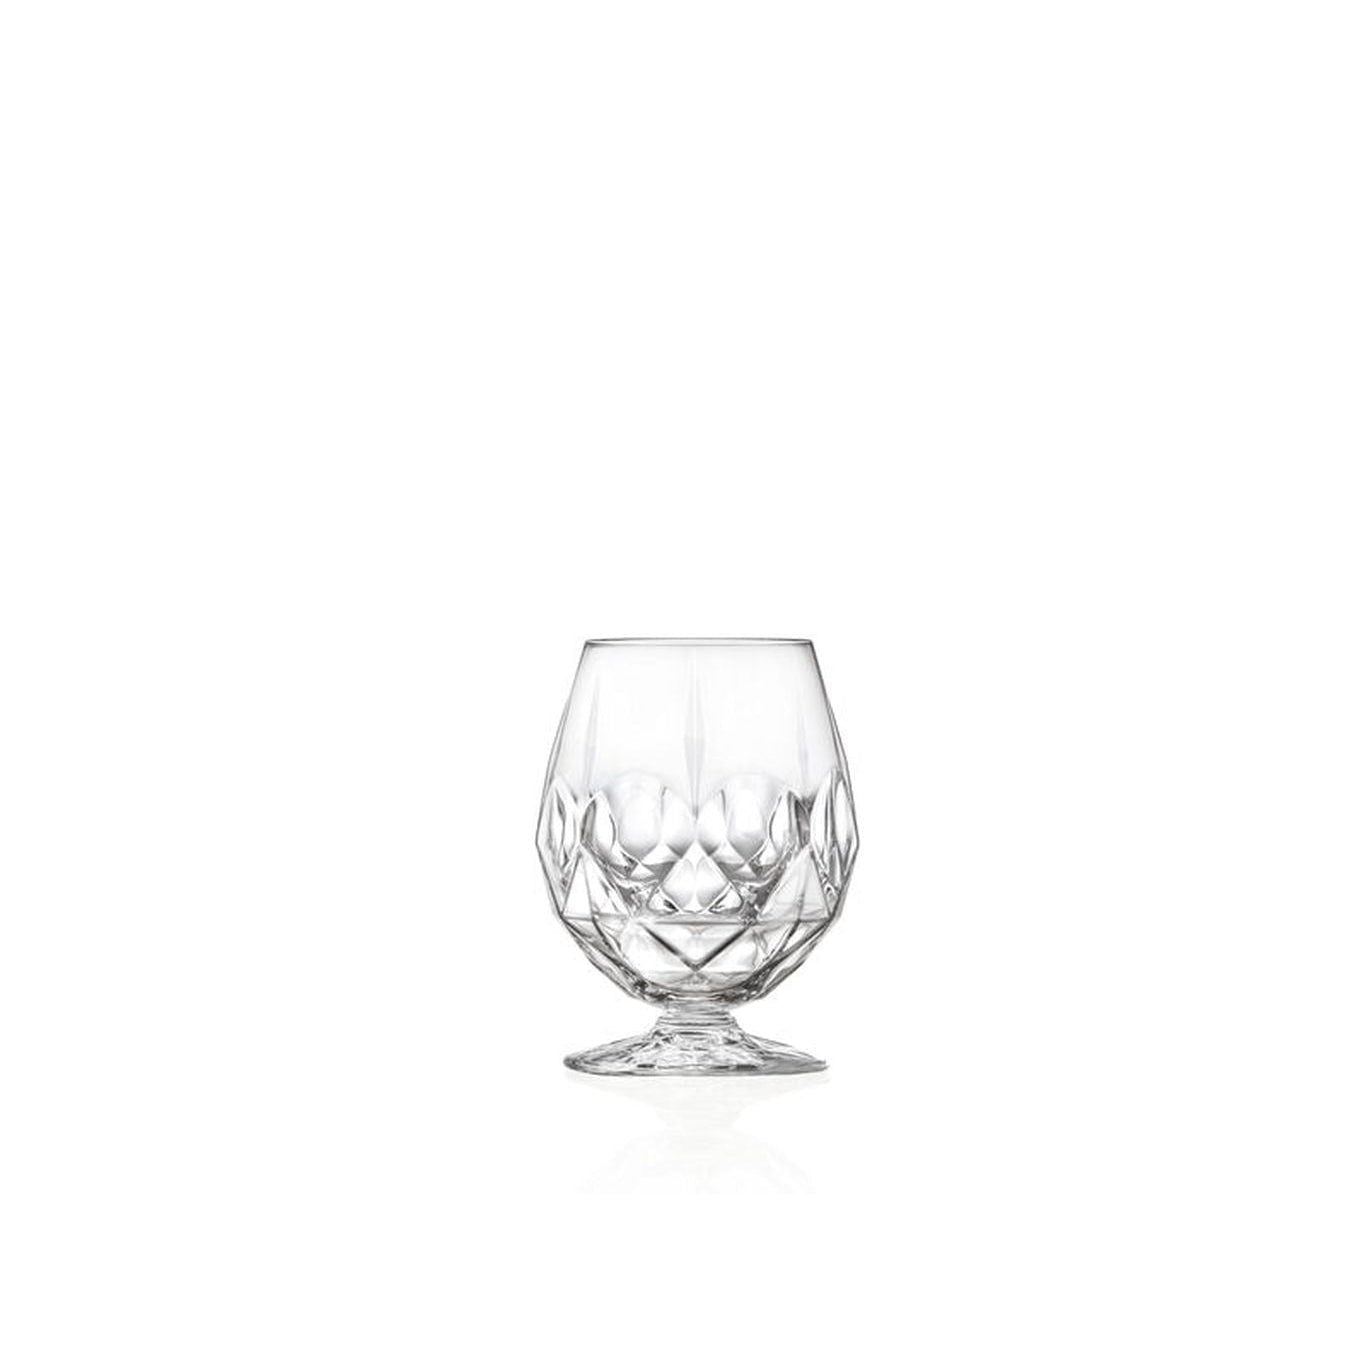 Lyngby Glas Alkemist Krystal Beer Glass 53 Cl, 2 PC.